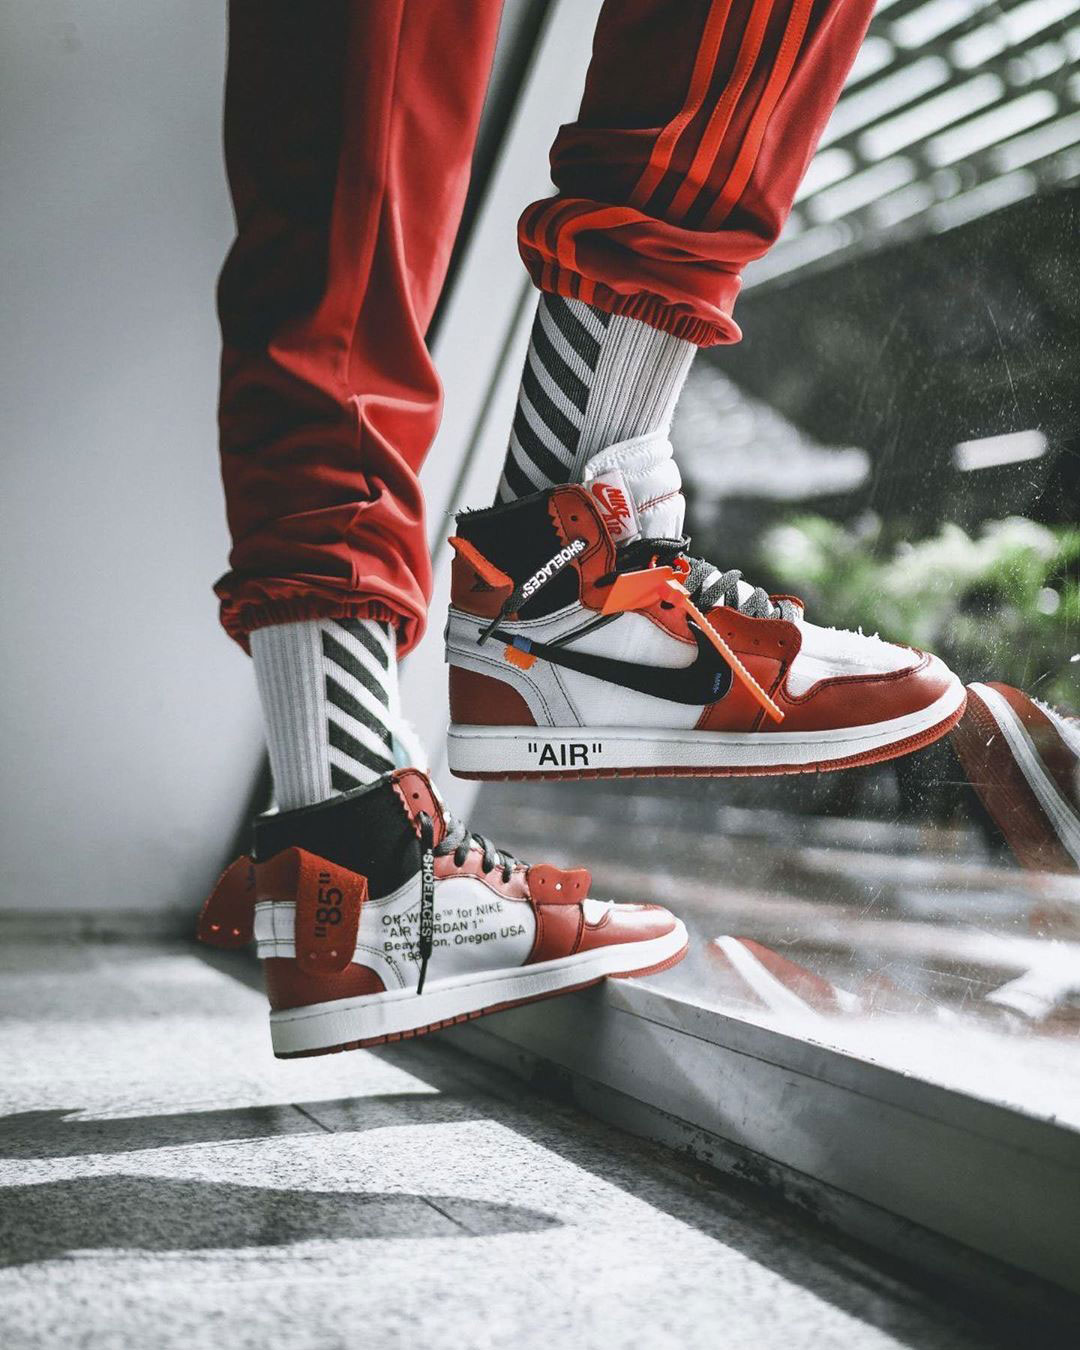 Giày Air Jordan 1 là thiết kế kinh điển của hãng Nike, được đánh giá là một trong những đôi giày đá banh đẹp nhất mọi thời đại. Hãy ngắm nhìn từng chi tiết của đôi giày này: chất liệu cao cấp, thiết kế đặc trưng, đường chỉ may chắc chắn,... Tất cả đều khiến giày Air Jordan 1 trở thành một tác phẩm nghệ thuật.